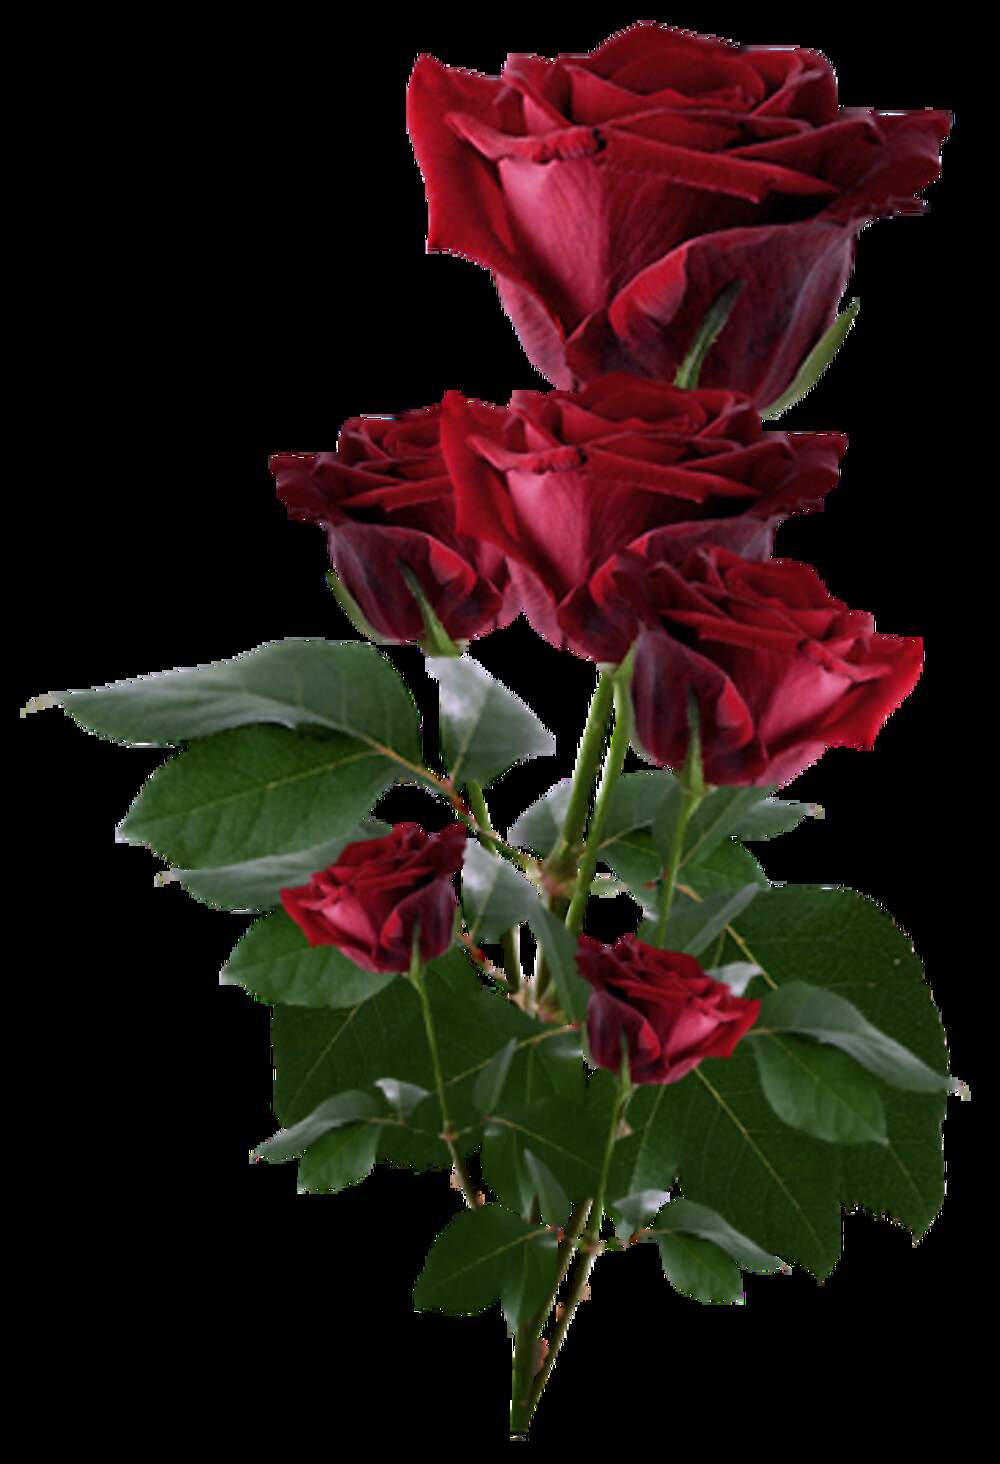 красивые розы фото хорошего качества мерцающие